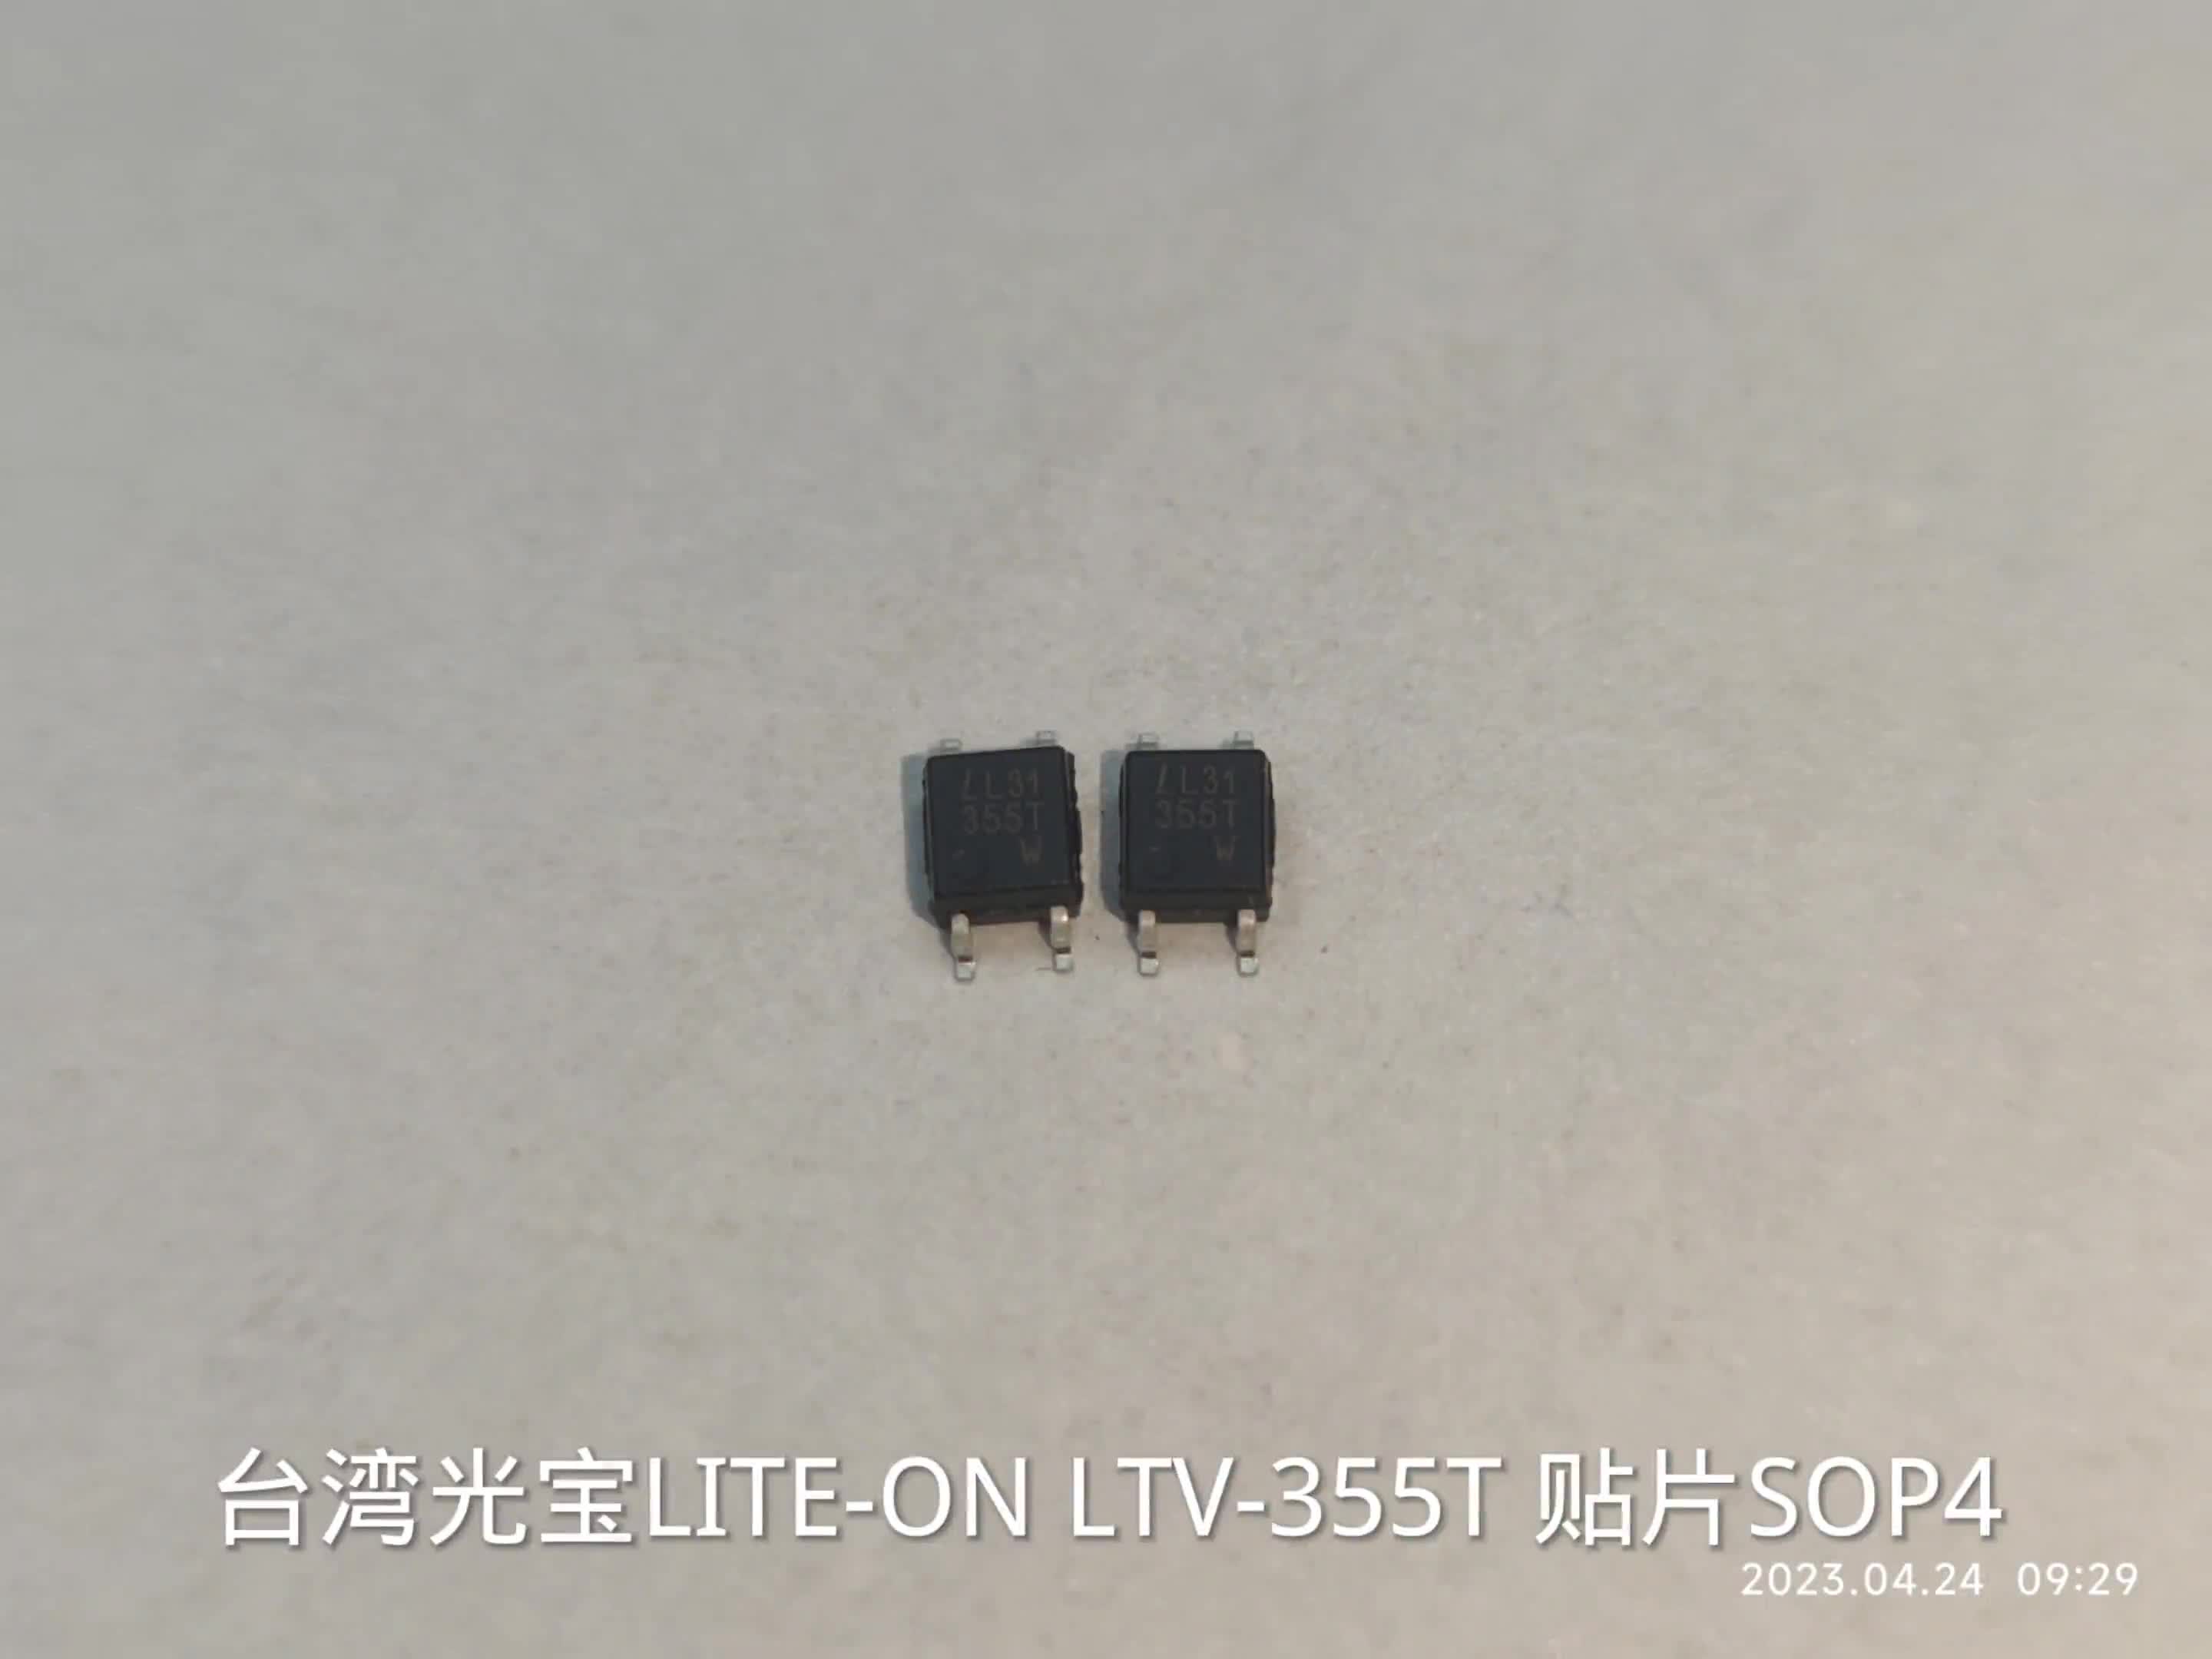 现货供应LITEON LTV-357T-C-36光耦 光电晶体管